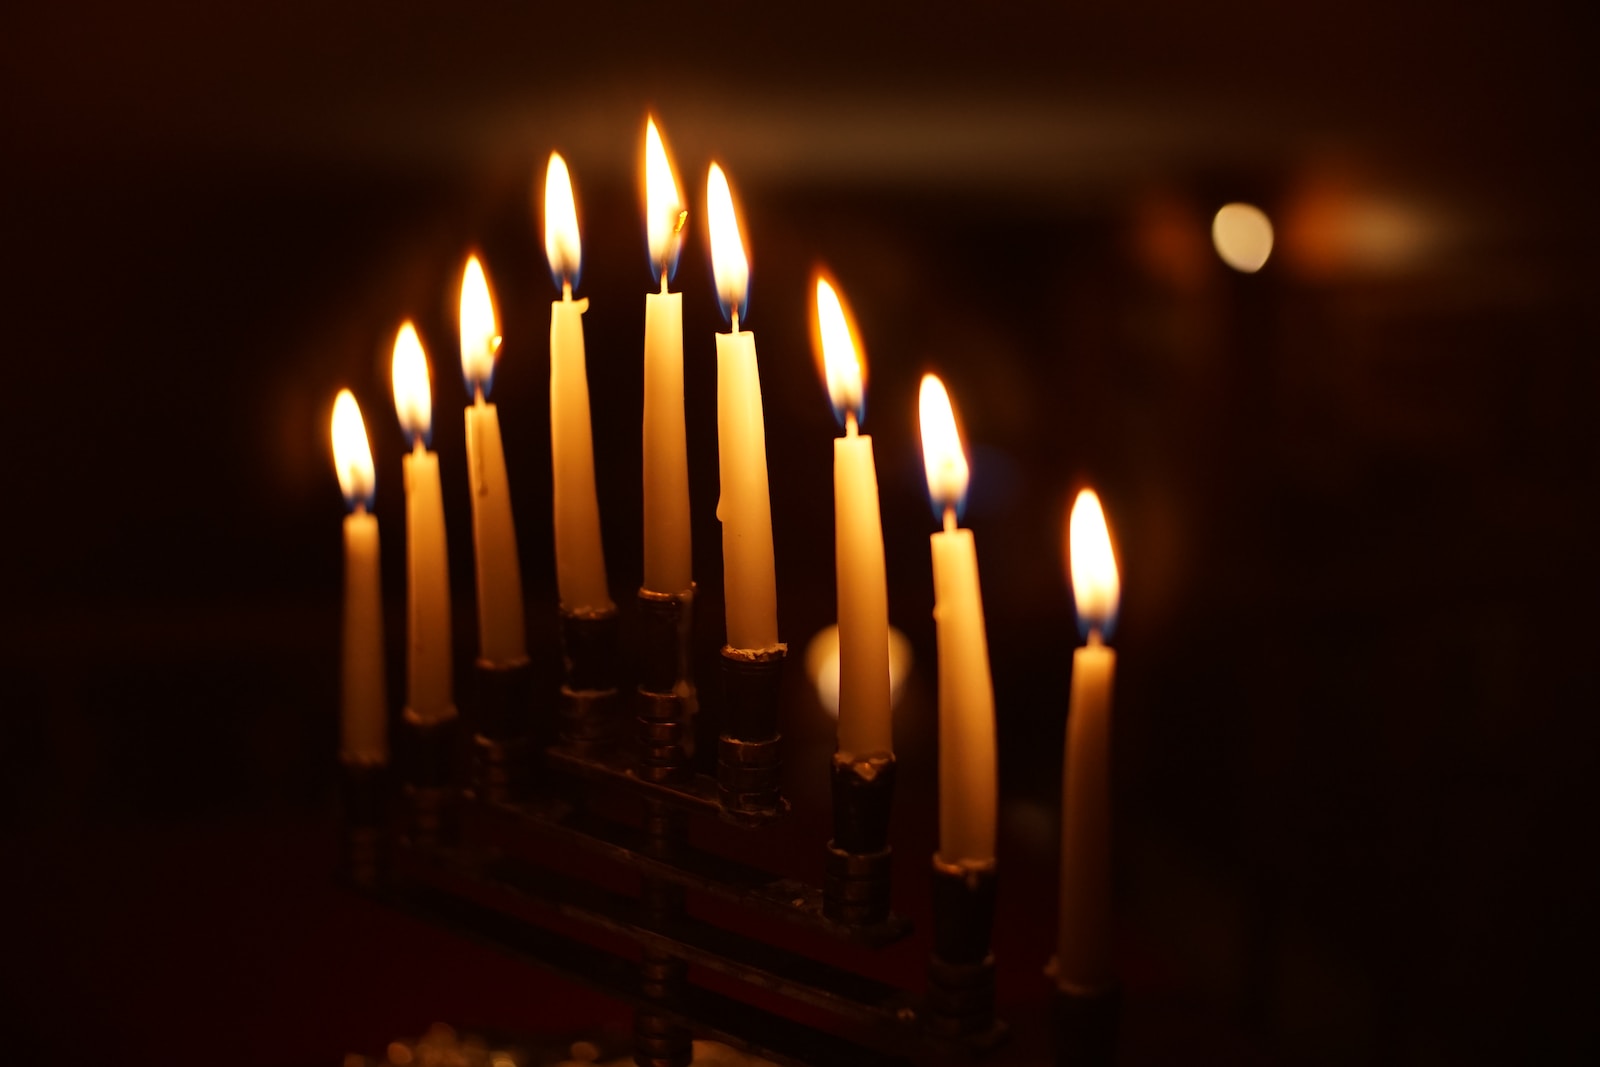 温哥华犹太社区呼吁在光明节期间保持友善